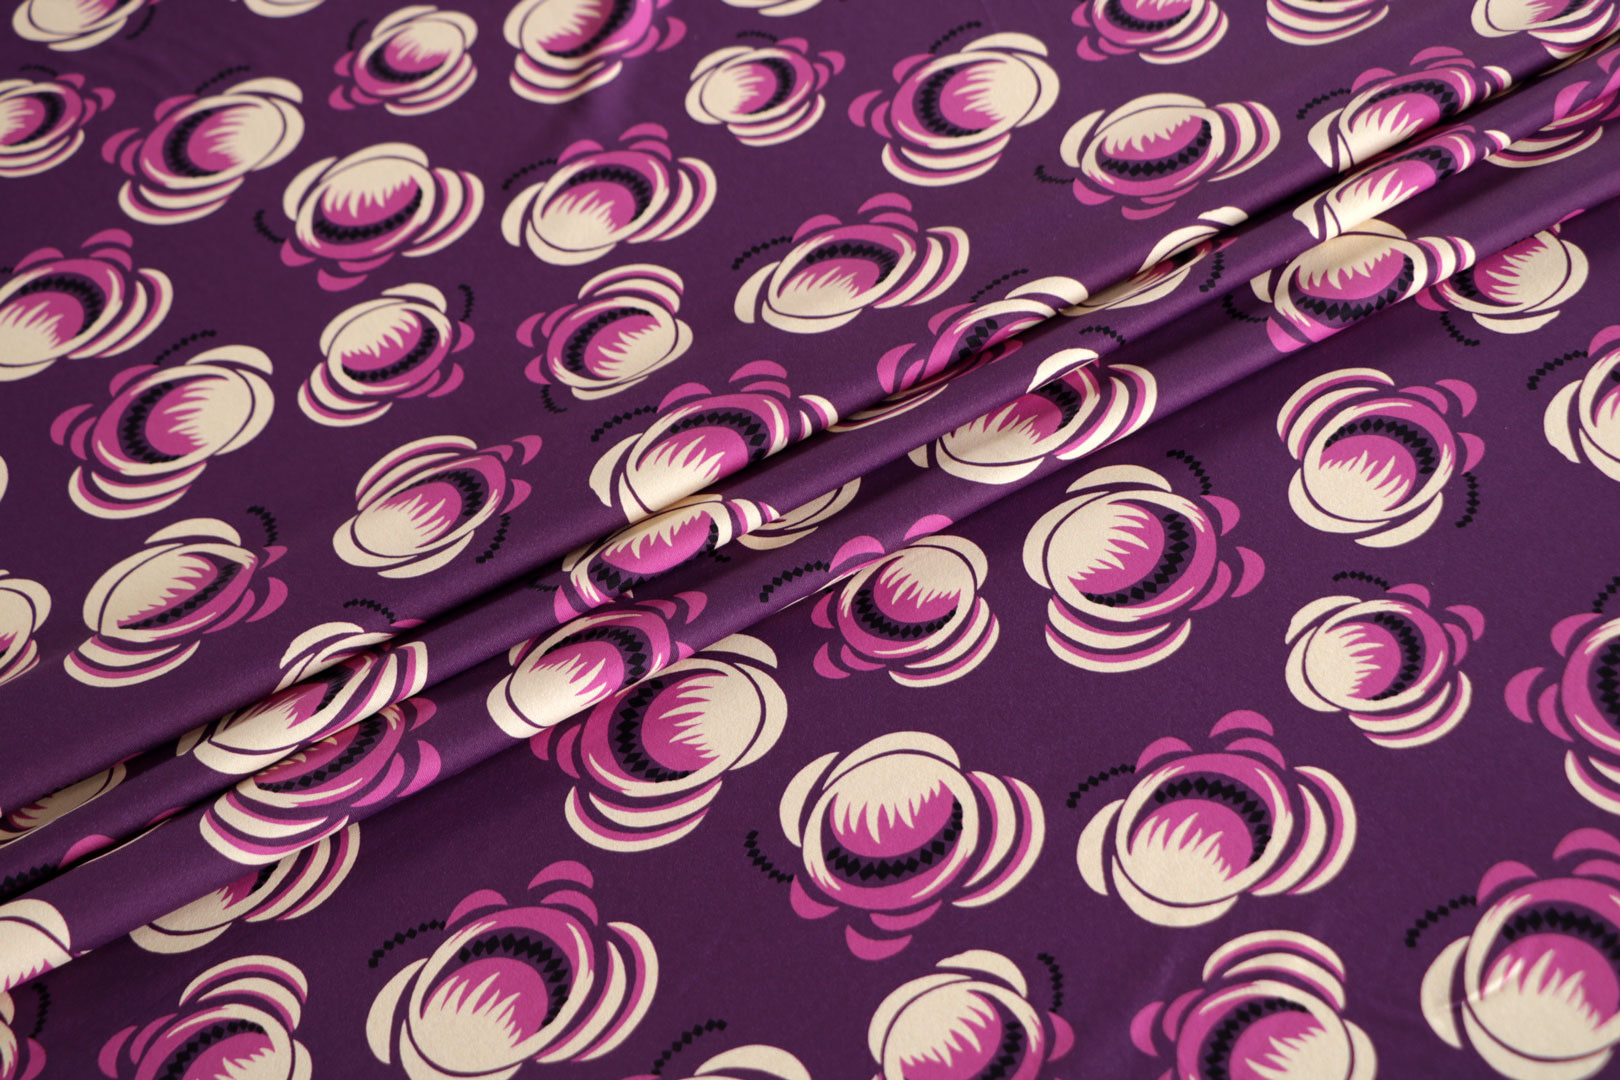 Tessuto Viola in Poliestere, Stretch per abbigliamento